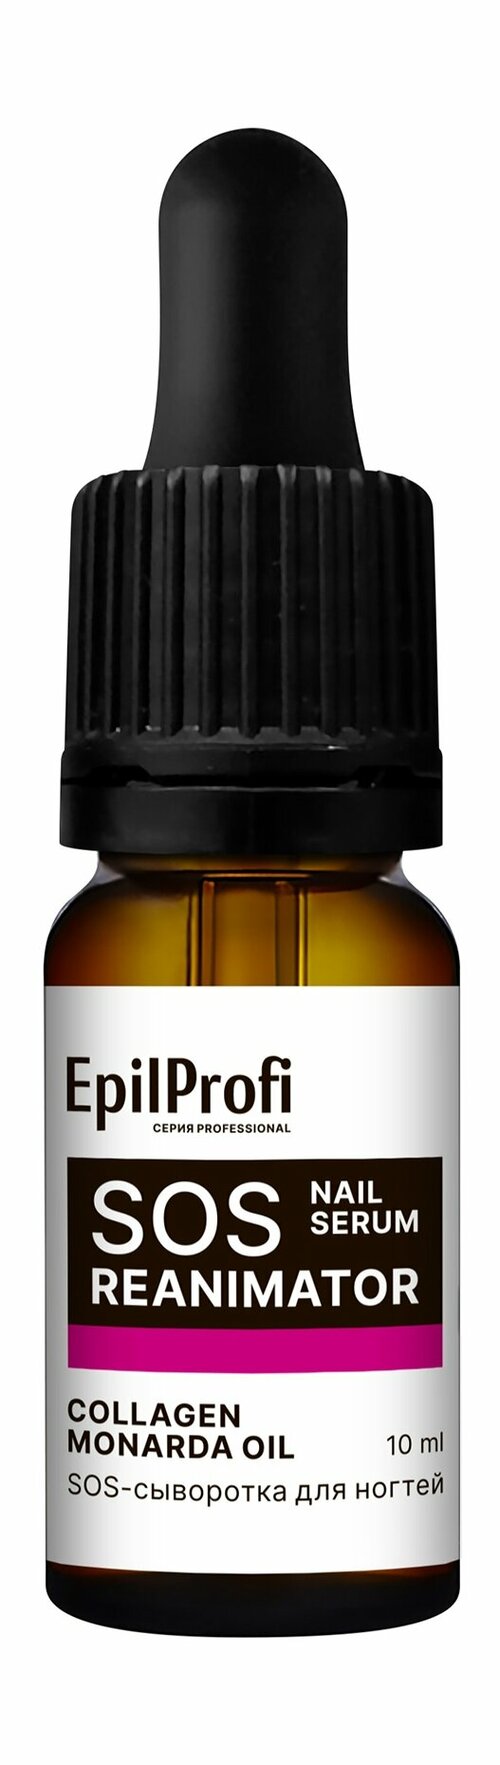 EPILPROFI Сыворотка-SOS для ногтей, 10 мл